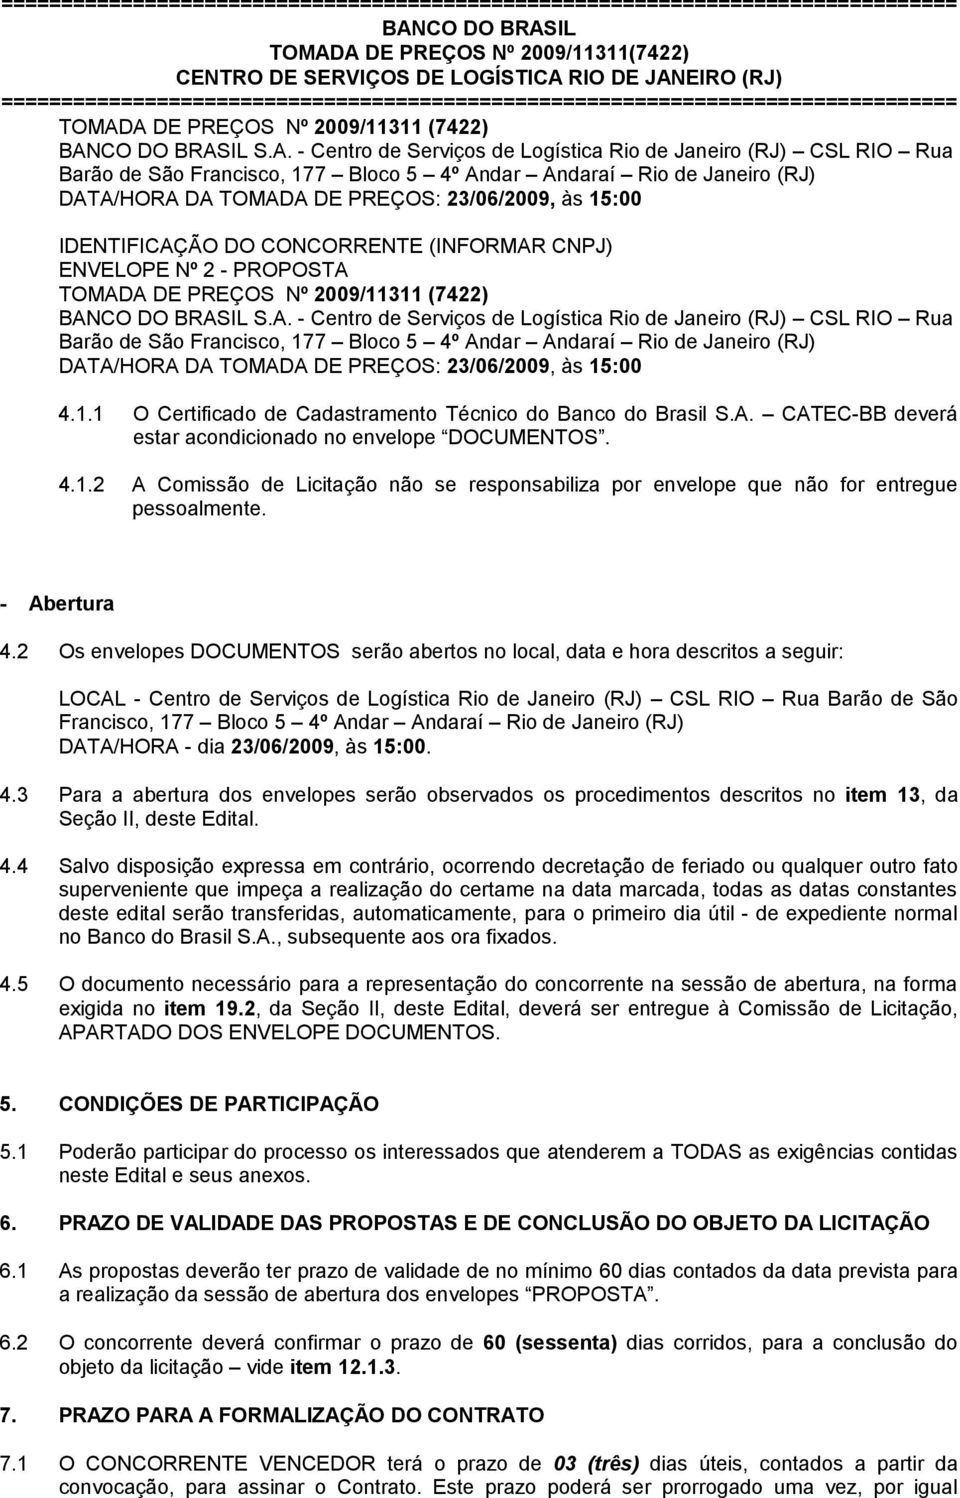 IDENTIFICAÇÃO DO CONCORRENTE (INFORMAR CNPJ) ENVELOPE Nº 2 - PROPOSTA TOMADA DE PREÇOS Nº 2009/11311 (7422)  4.1.1 O Certificado de Cadastramento Técnico do Banco do Brasil S.A. CATEC-BB deverá estar acondicionado no envelope DOCUMENTOS.